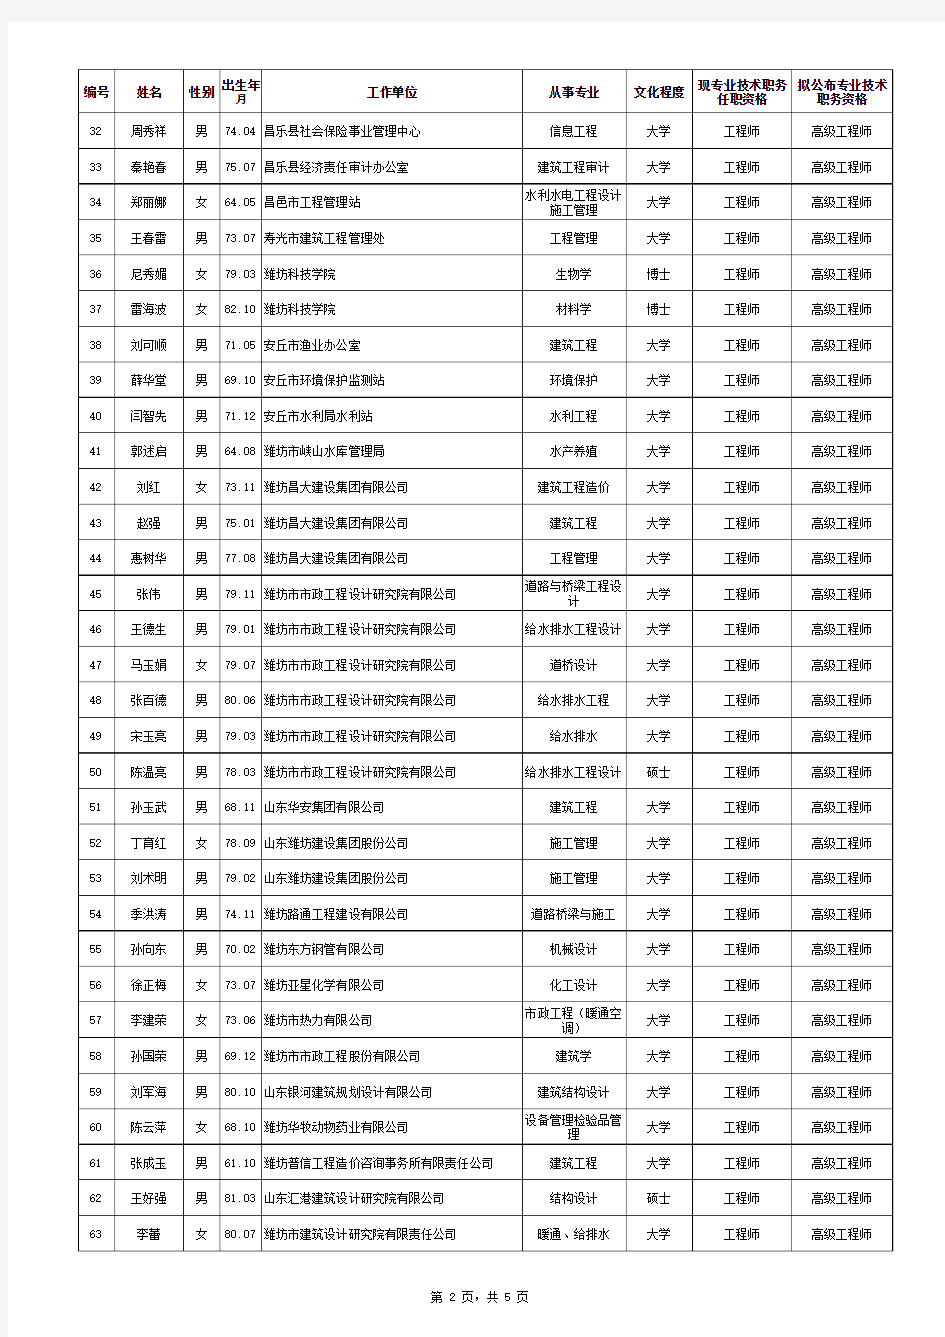 2014年度潍坊市工程副高级职称评审通过人员名单